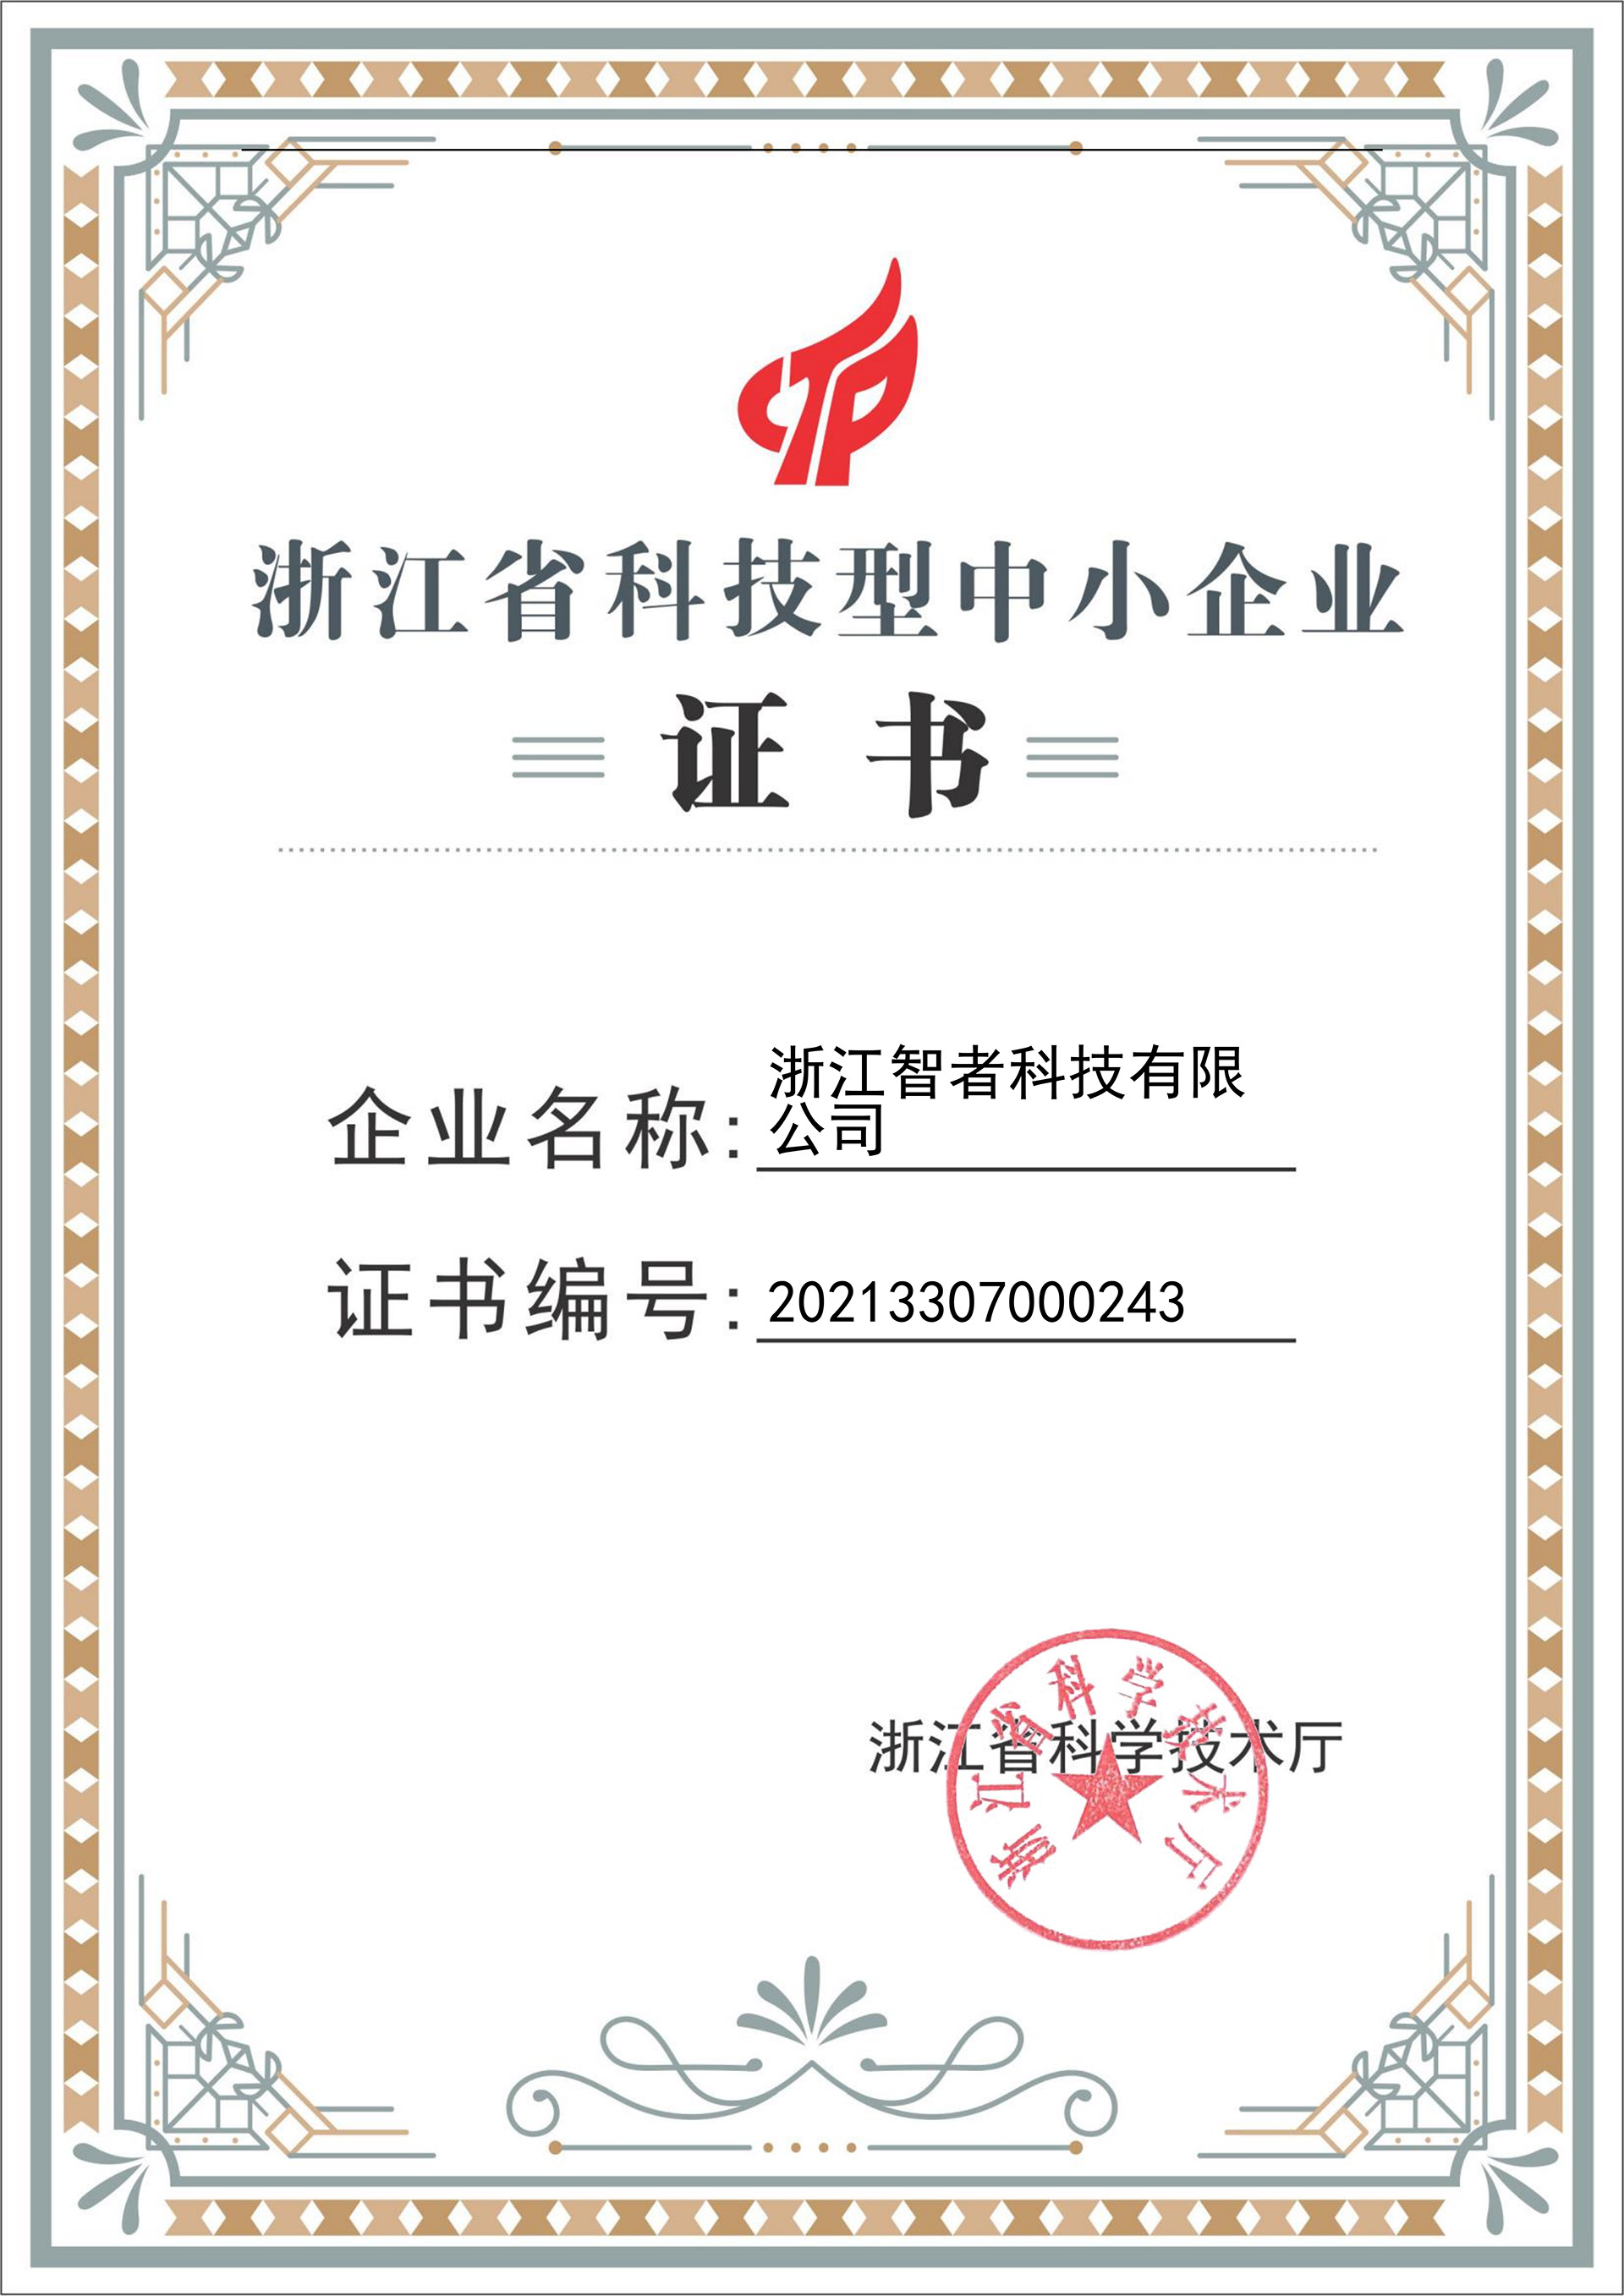 熱烈祝賀我司榮獲“浙江省科技型中小企業”認證證書(shū)